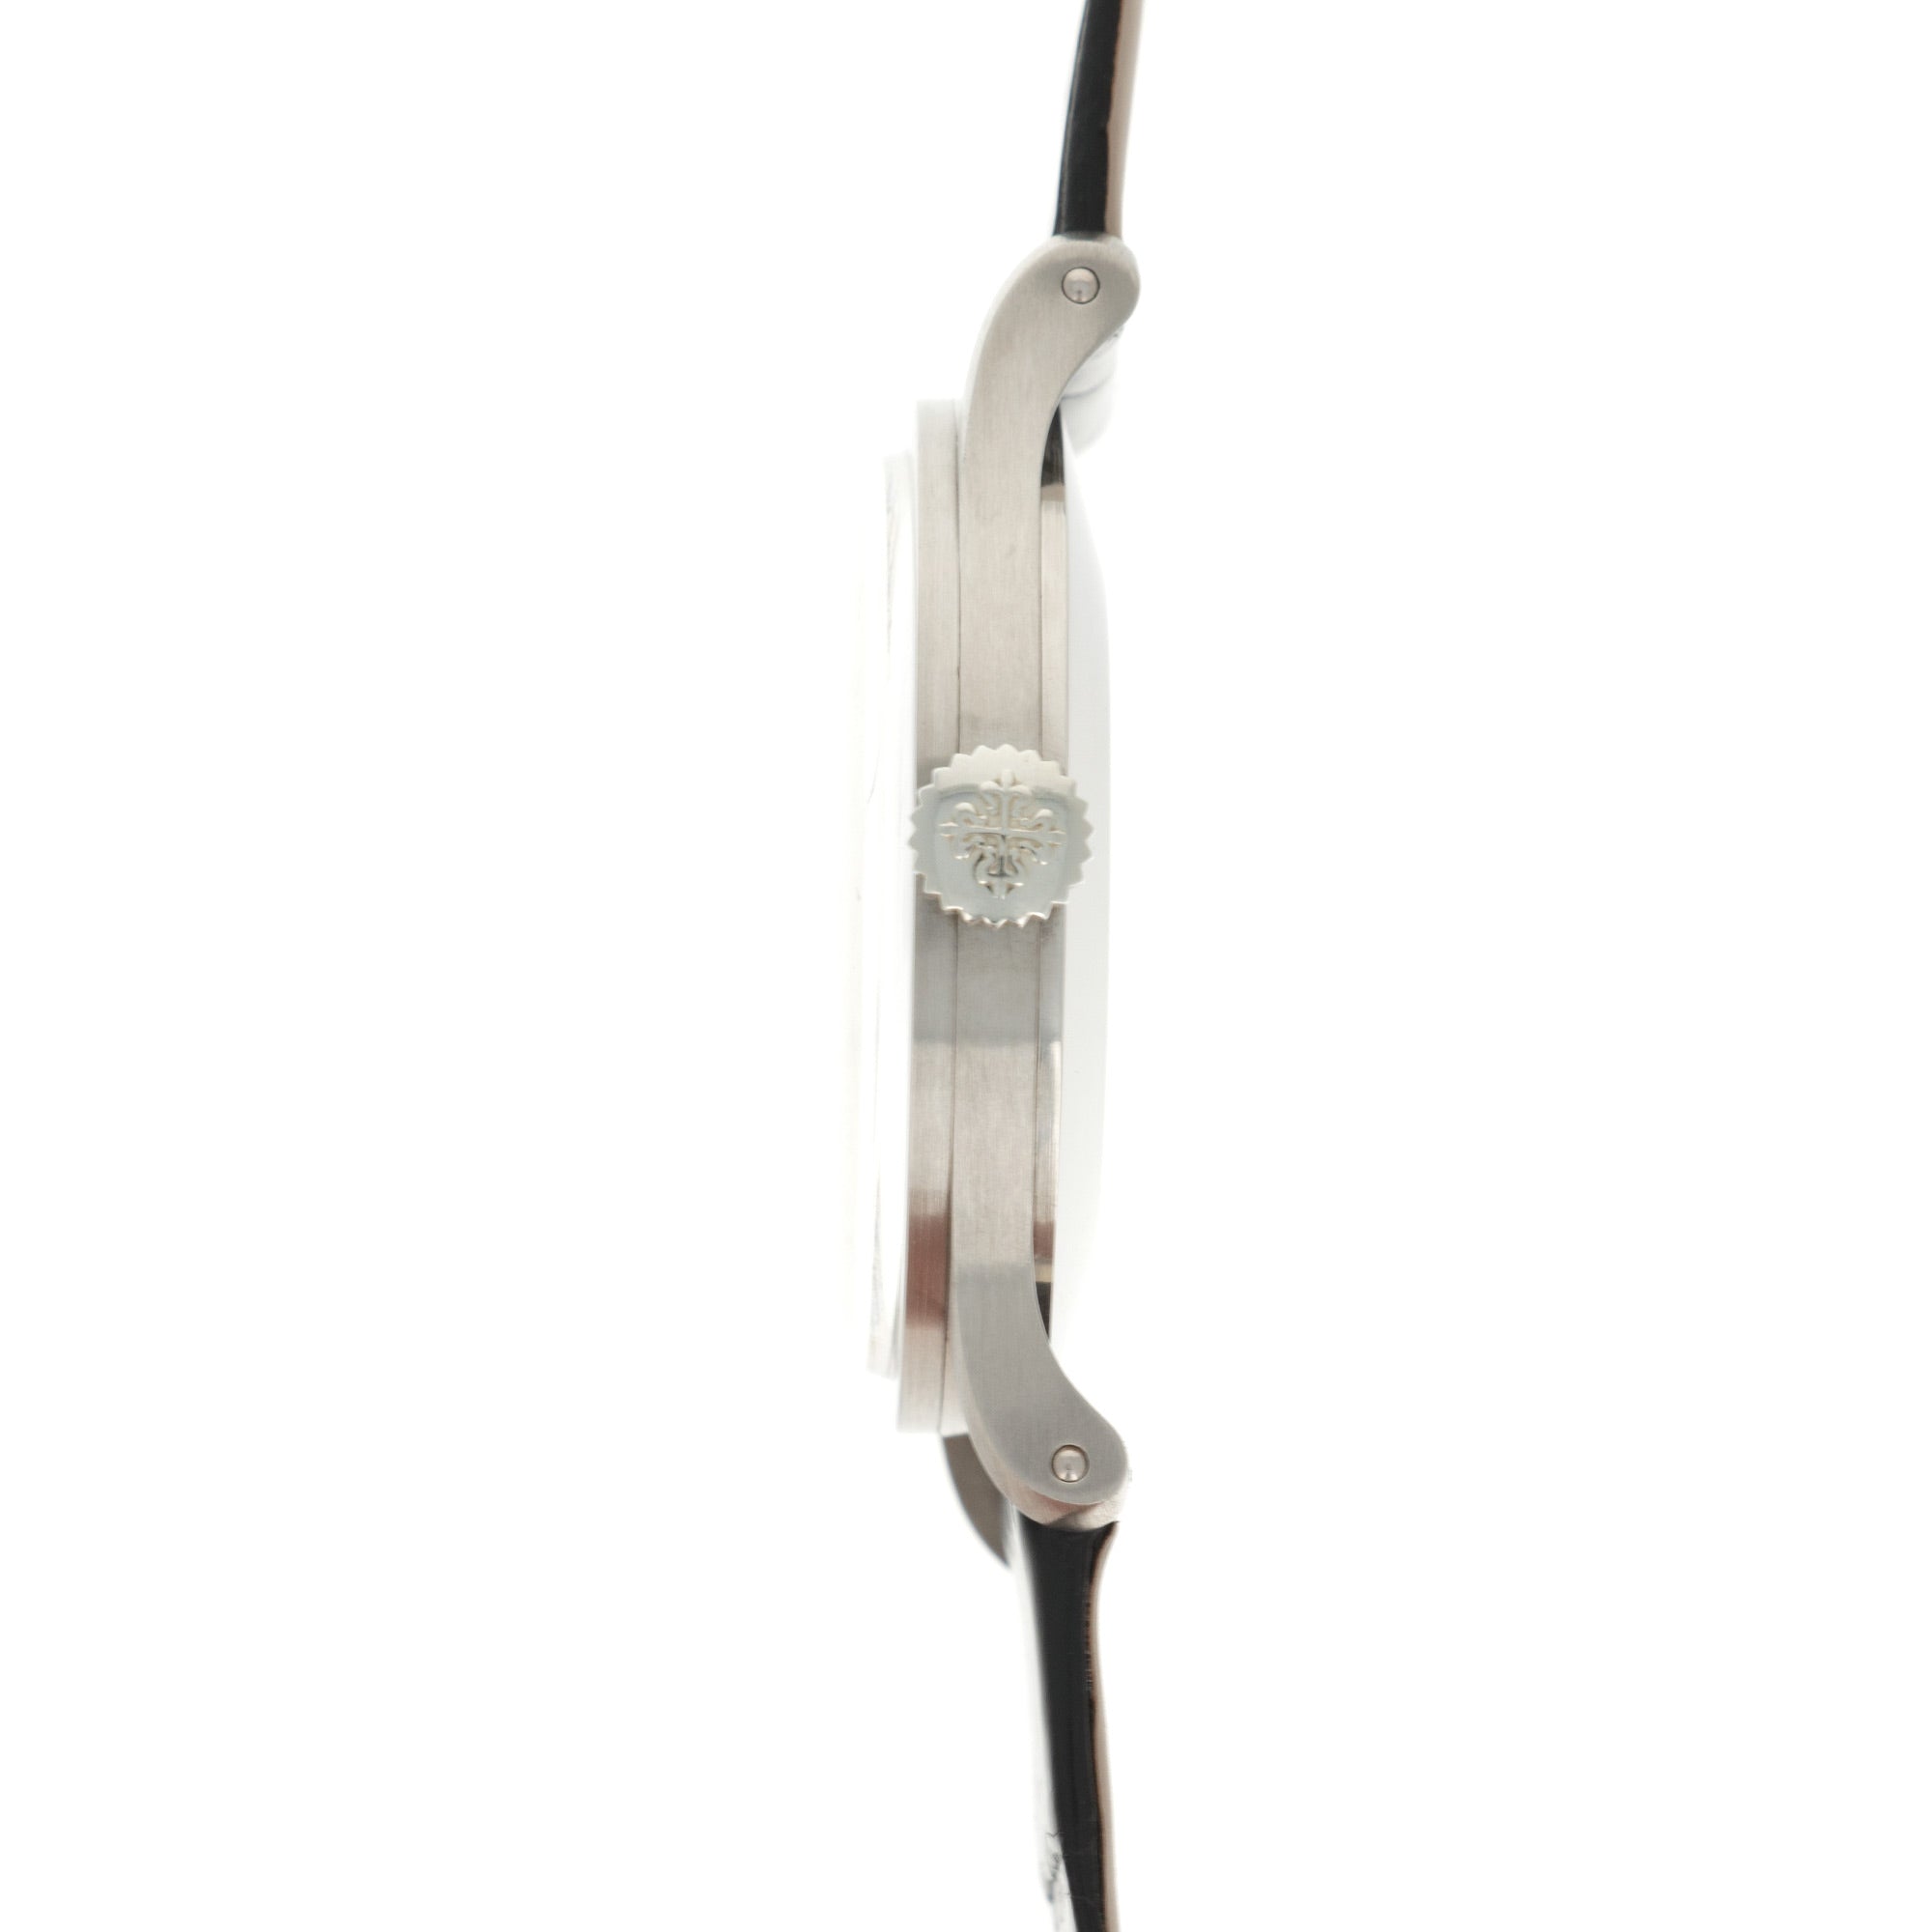 Patek Philippe - Patek Philippe White Gold Calatrava Watch, Ref. 570 - The Keystone Watches